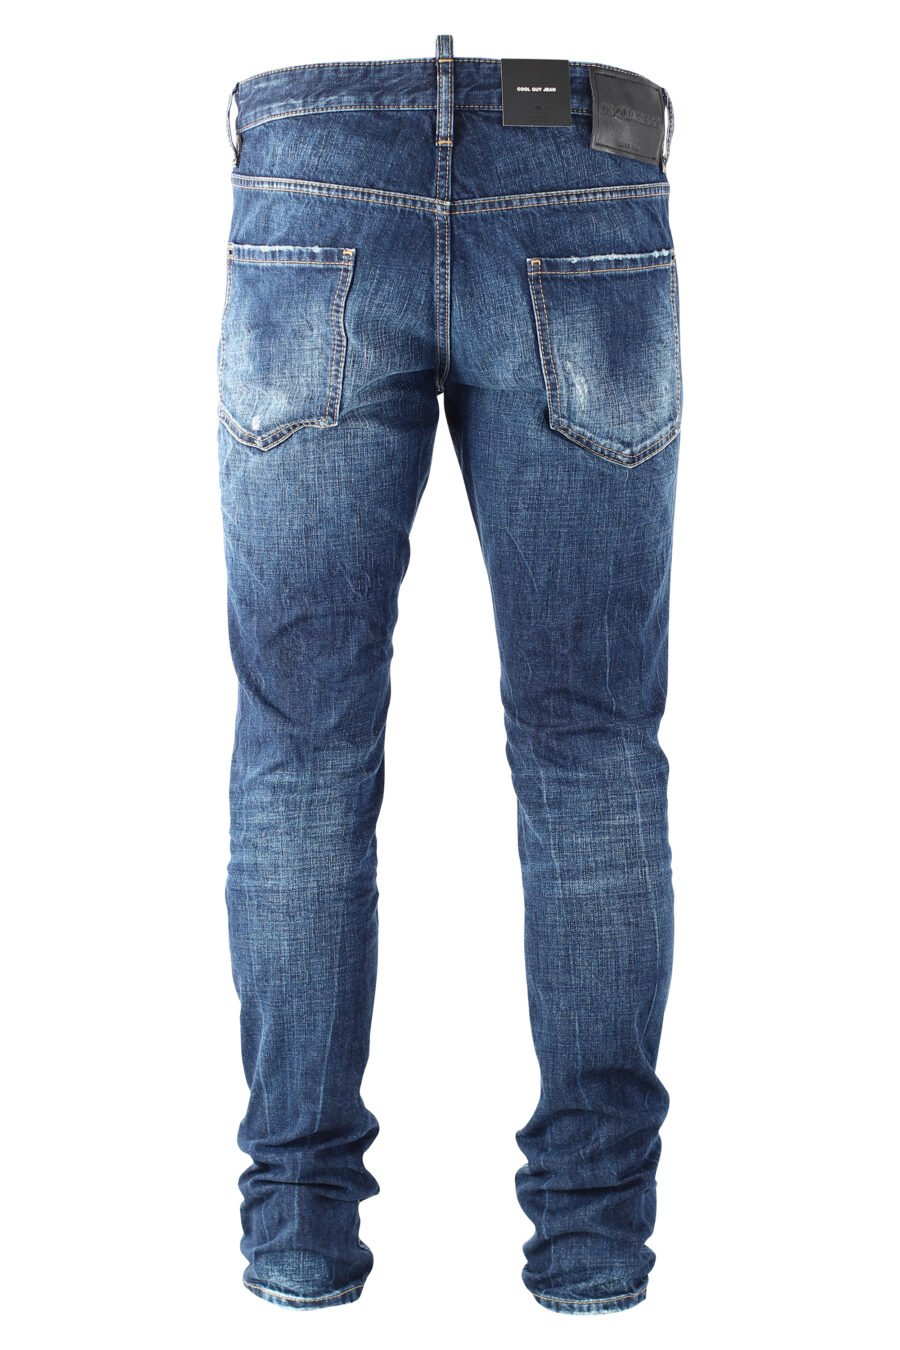 Calças de ganga "cool guy jean" azuis com logótipo "D2" preto - IMG 9689